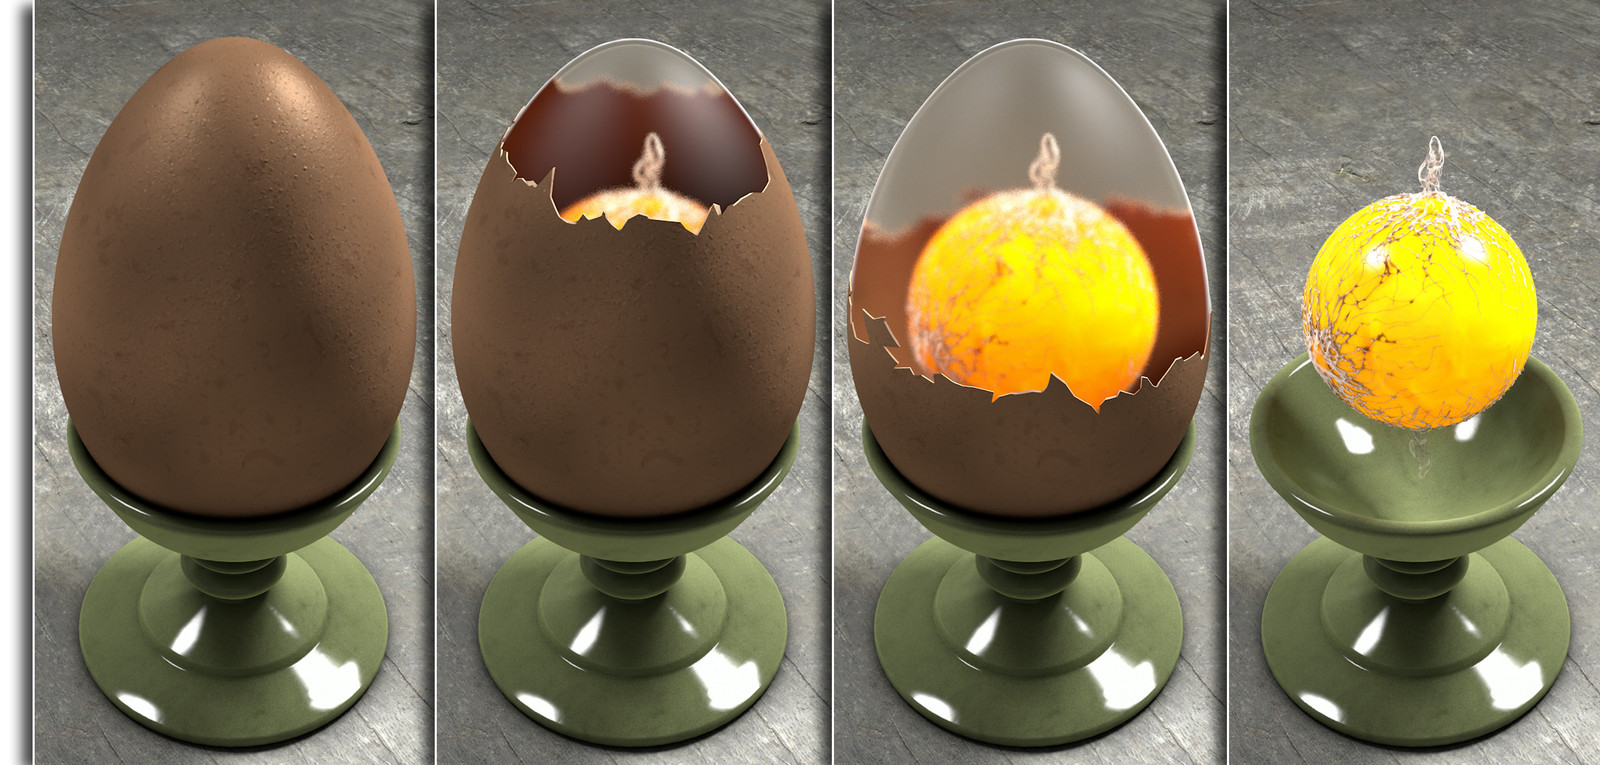 Egg, open